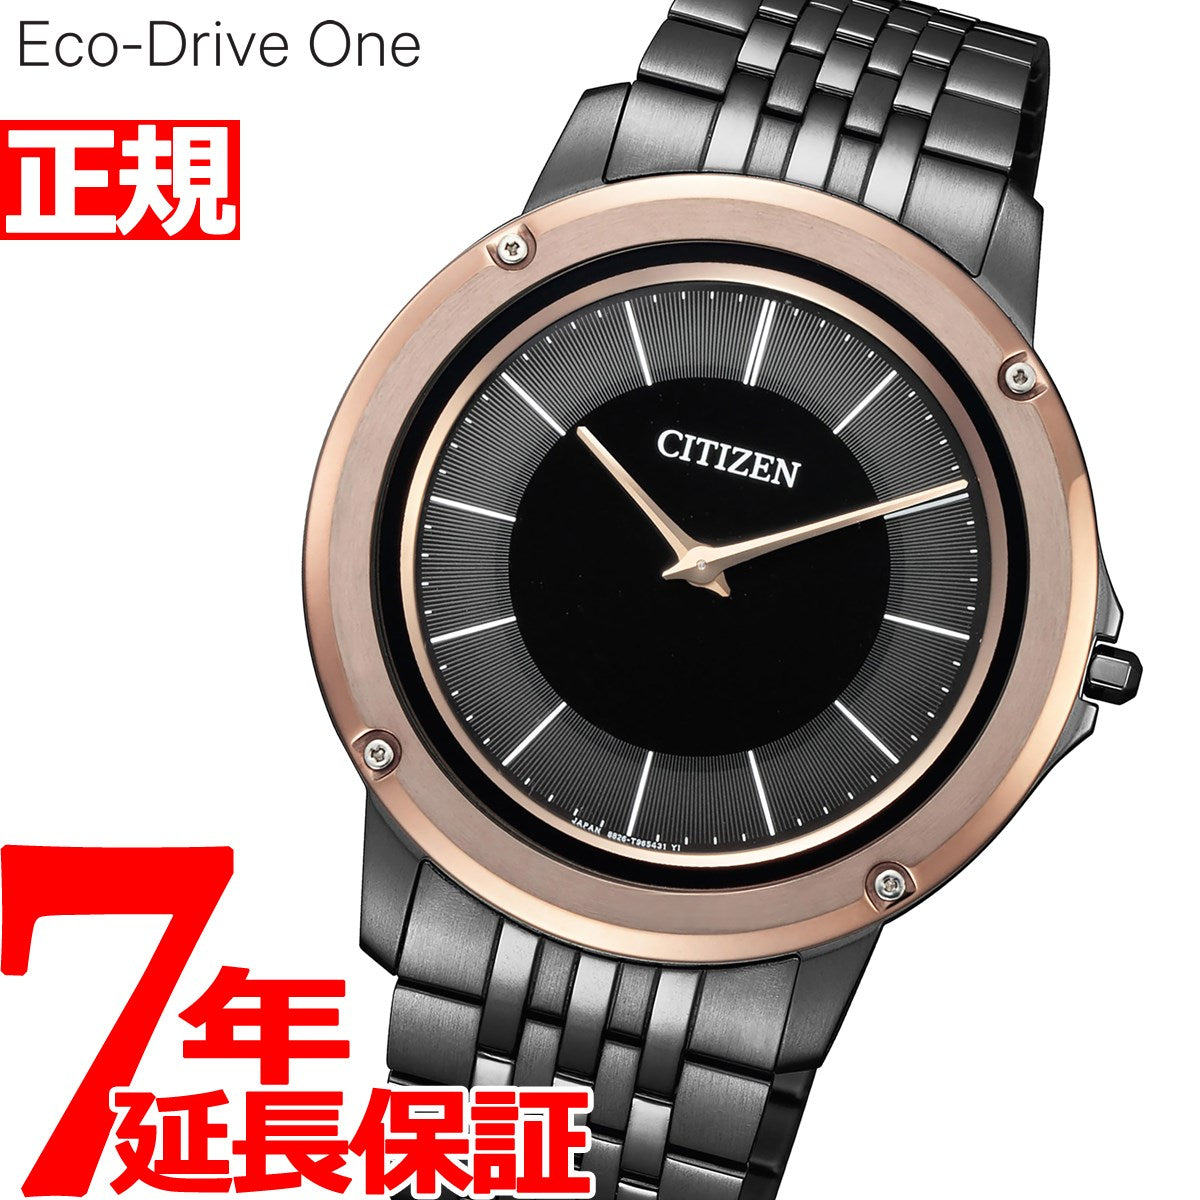 シチズン エコドライブ ワン CITIZEN Eco-Drive One ソーラー 腕時計 メンズ AR5054-51E【60回無金利ローン】